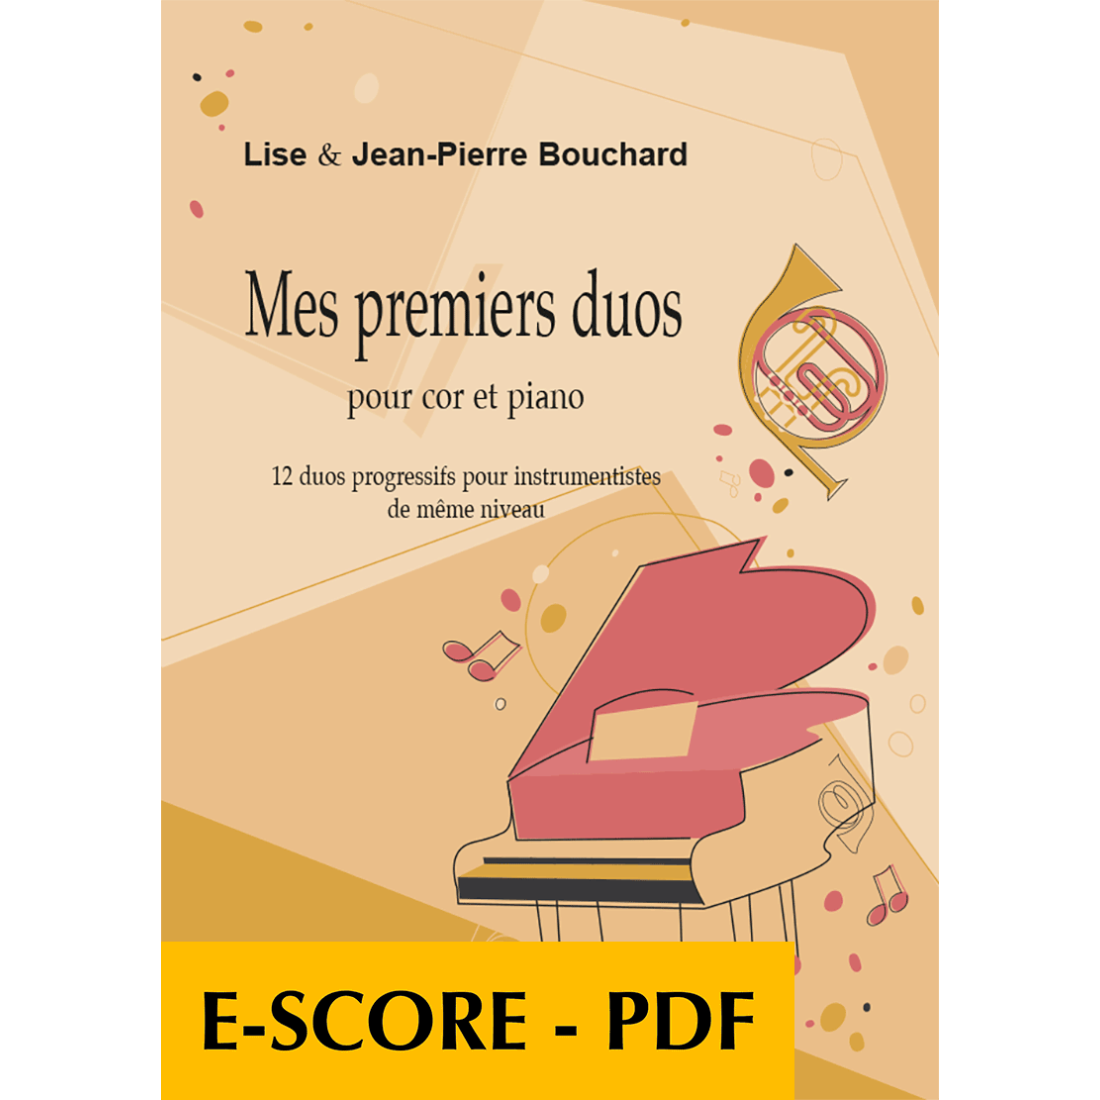 Mes premiers duos pour cor et piano - E-score PDF